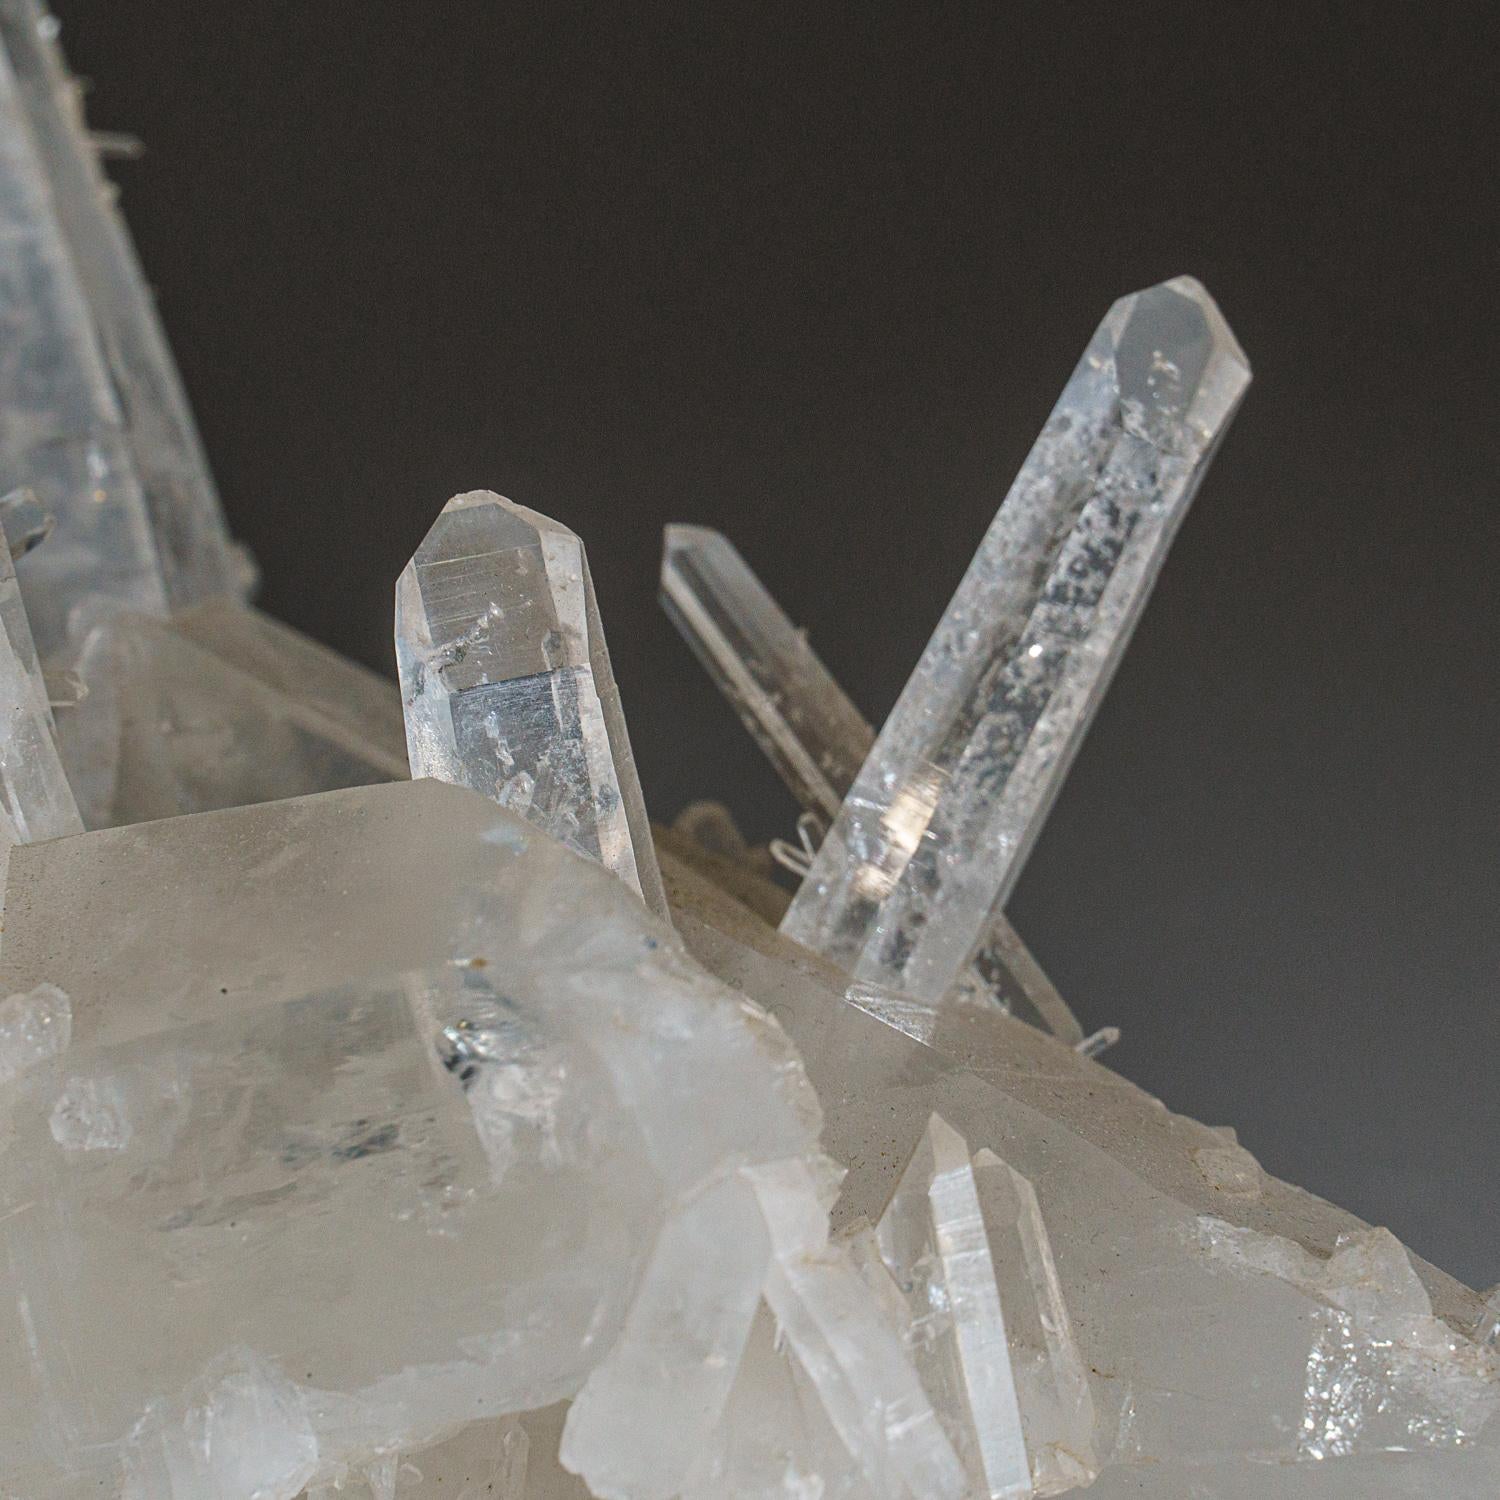 Des montagnes Ouachita, comté de Montgomery, ArkansasAssemblage esthétique de nombreux cristaux croisés de quartz incolore et transparent. Cette localité est réputée pour ces formations, communément appelées quartz en solution. Les cristaux de